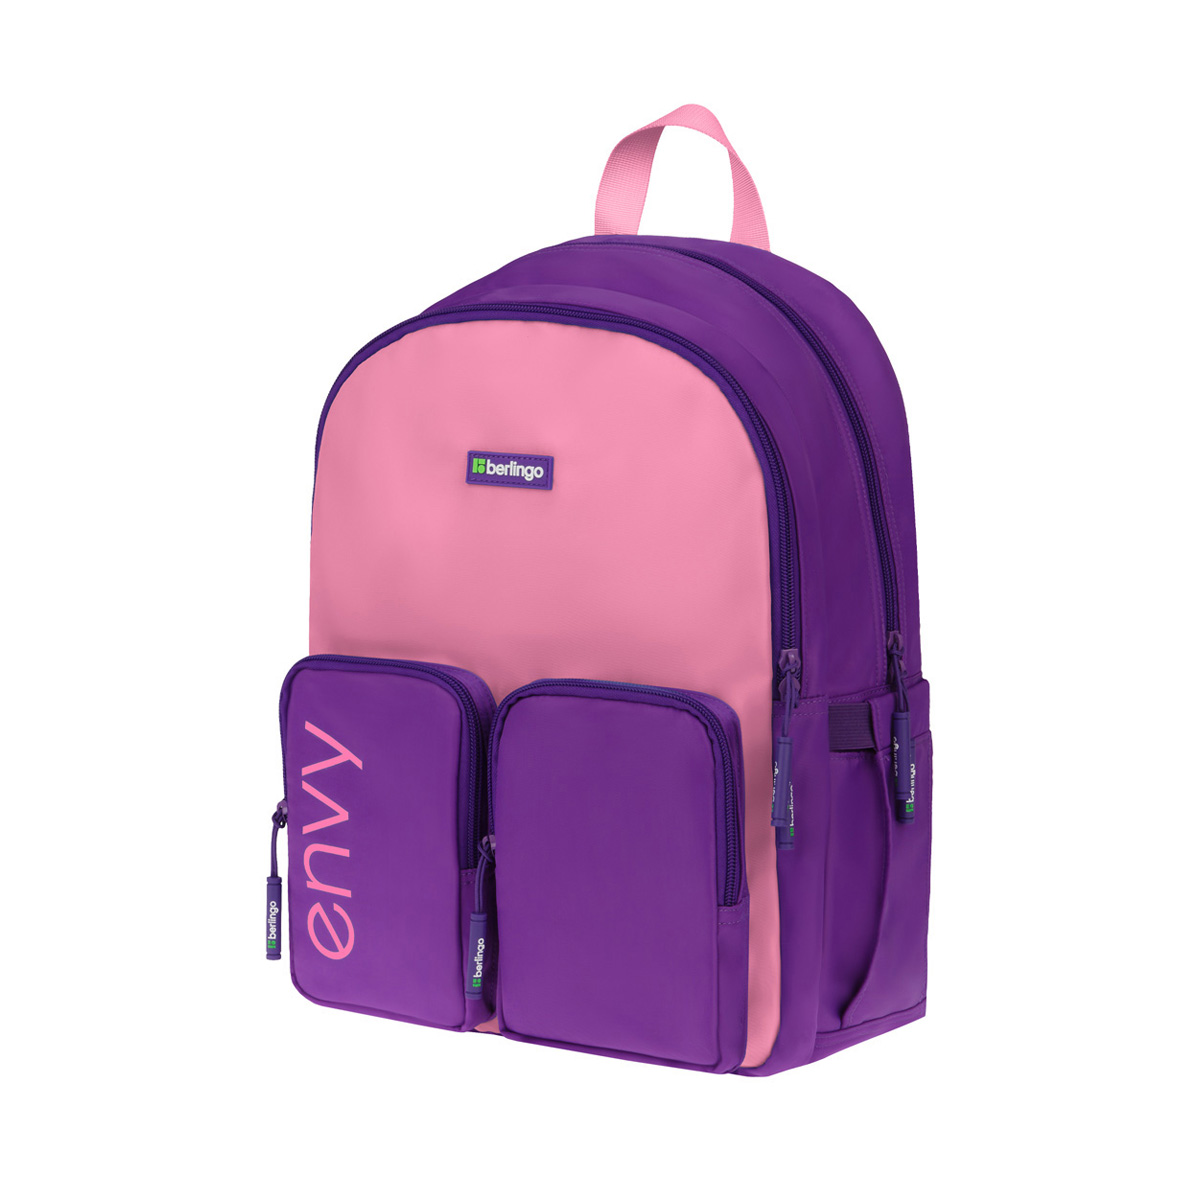 Рюкзак Berlingo Envy 2 отделения, 4 кармана, уплотненная спинка, 39*28*17см, розовый